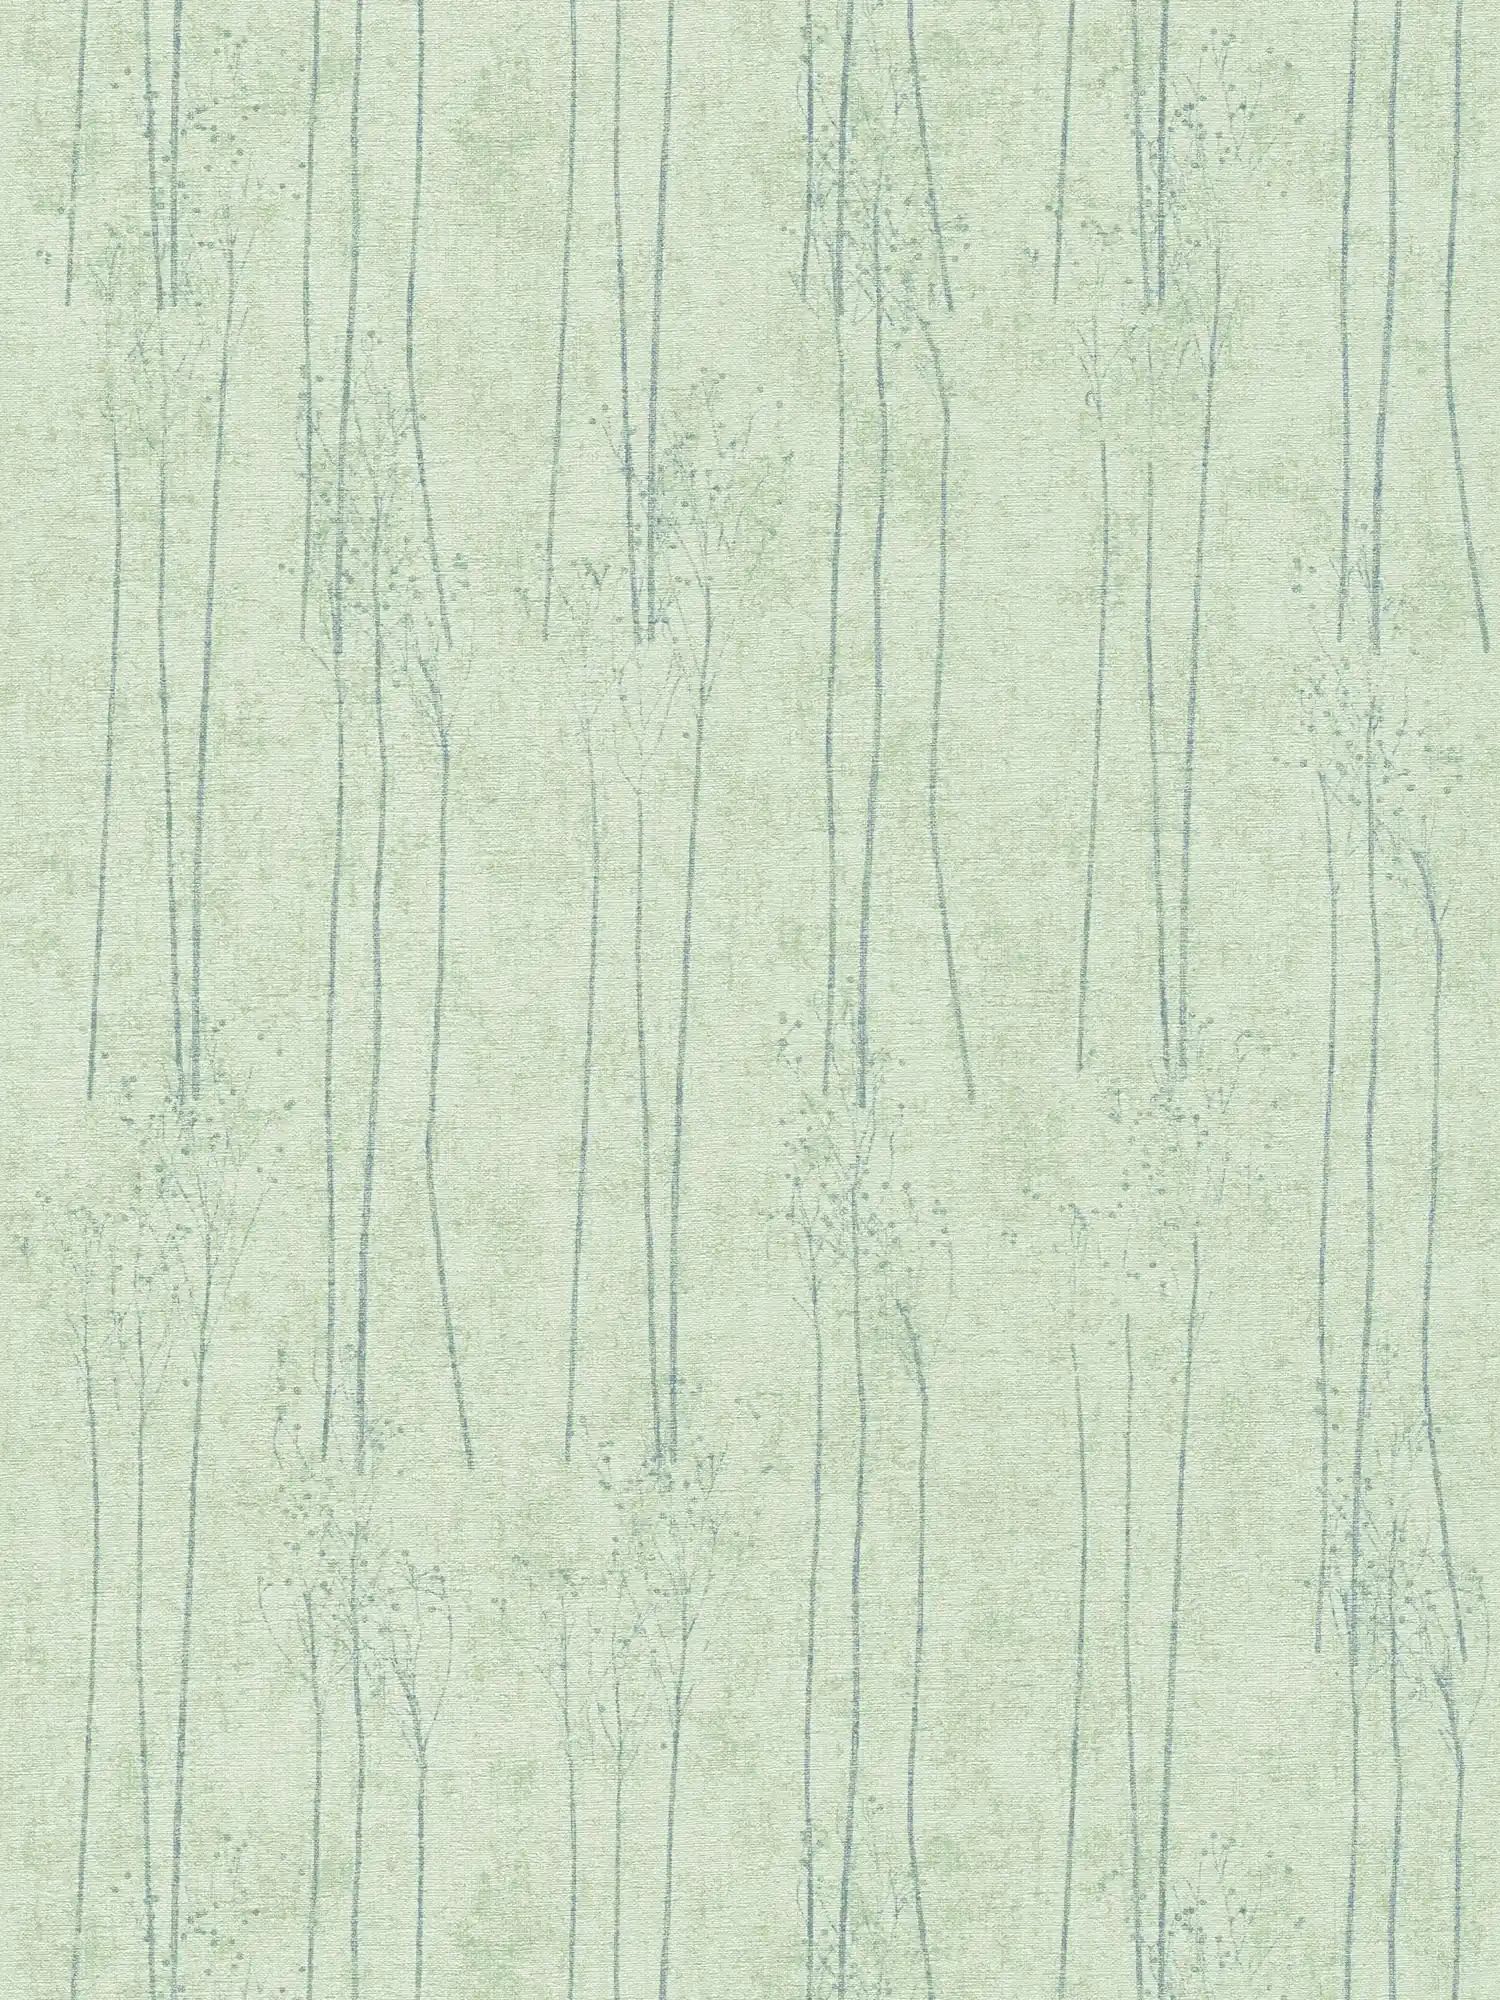 Mintgroen behang met natuurmotief in Scandi stijl - groen
